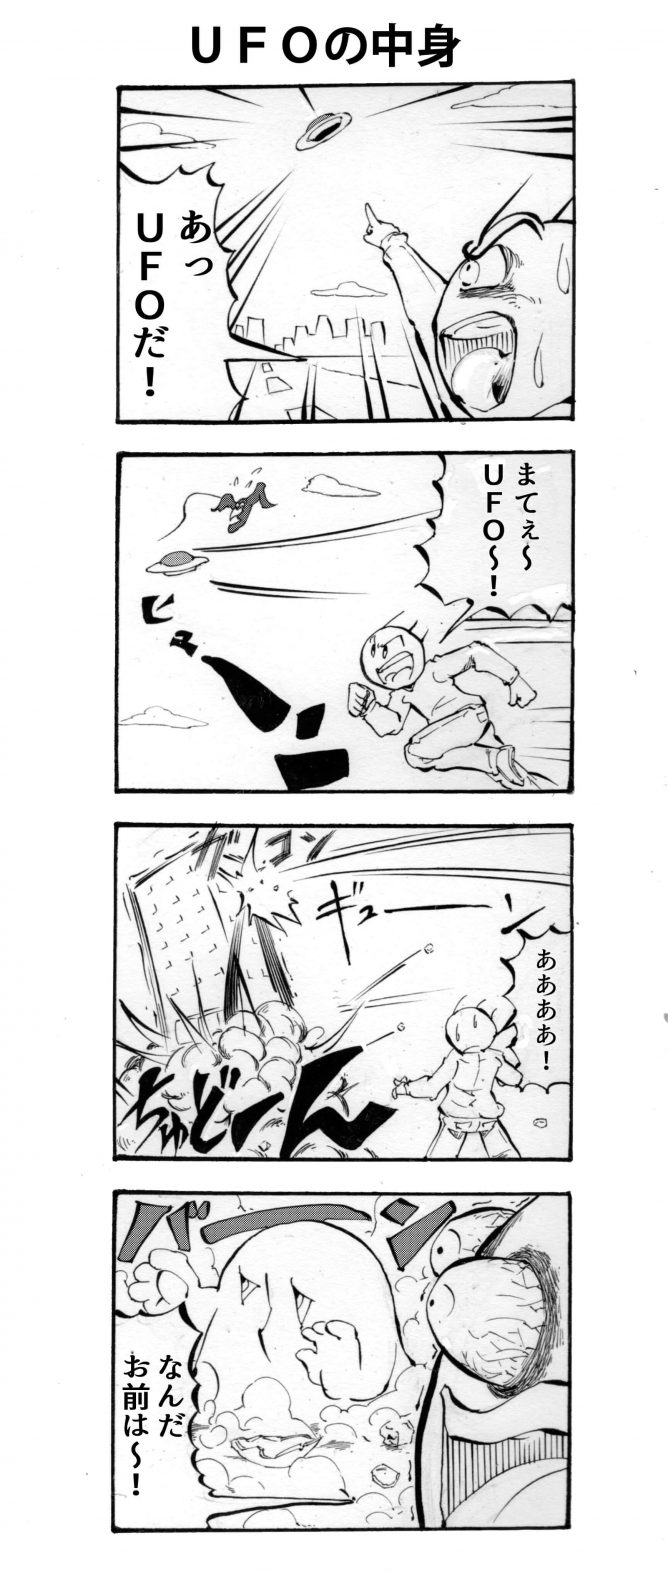 UFO,四コマ漫画